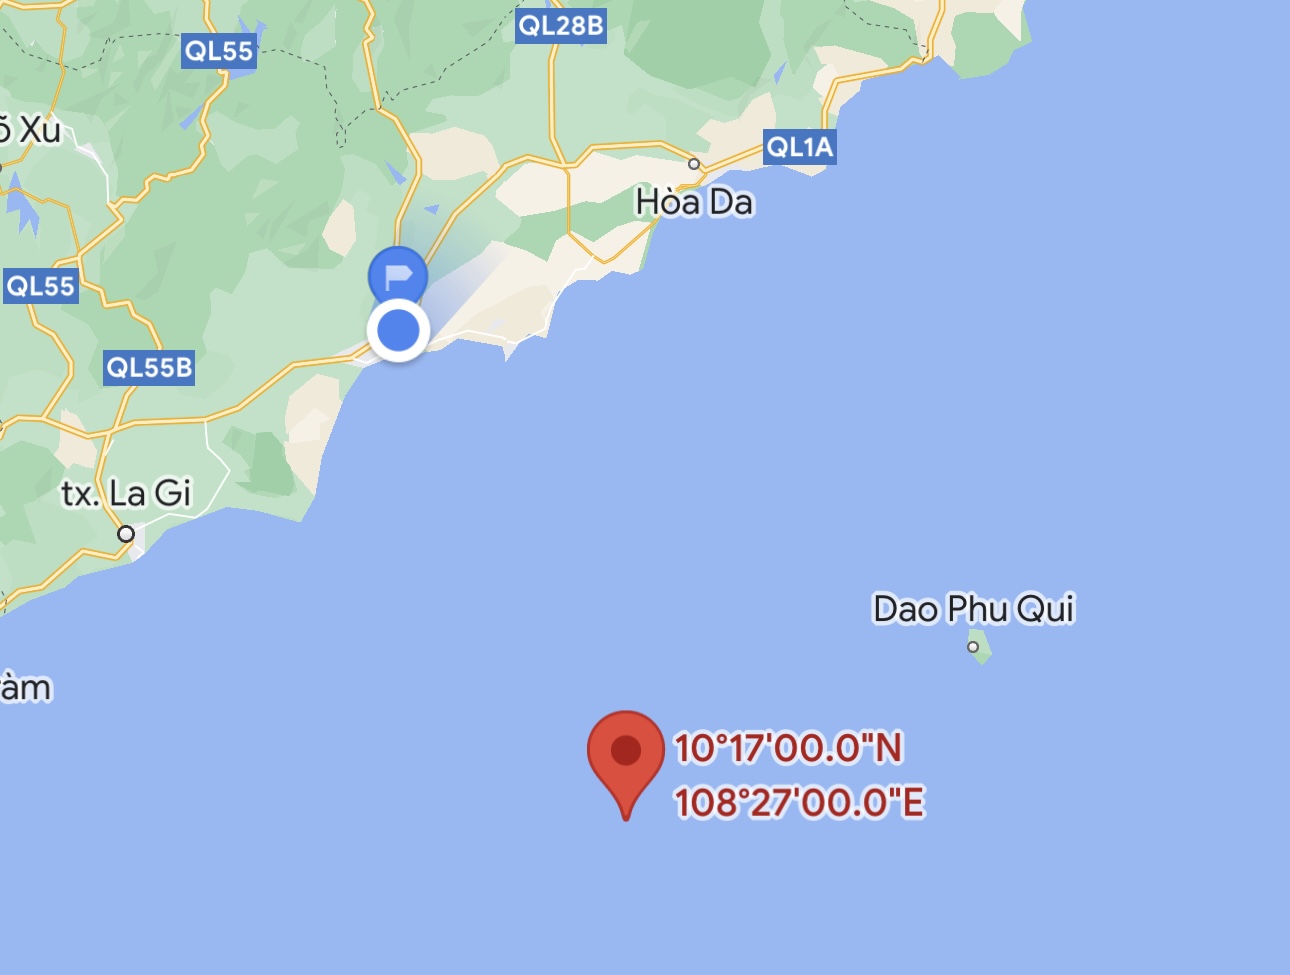 Vị trí tàu cá chìm cách đảo Phú Quý khoảng 30 hải lý. Ảnh Google Maps